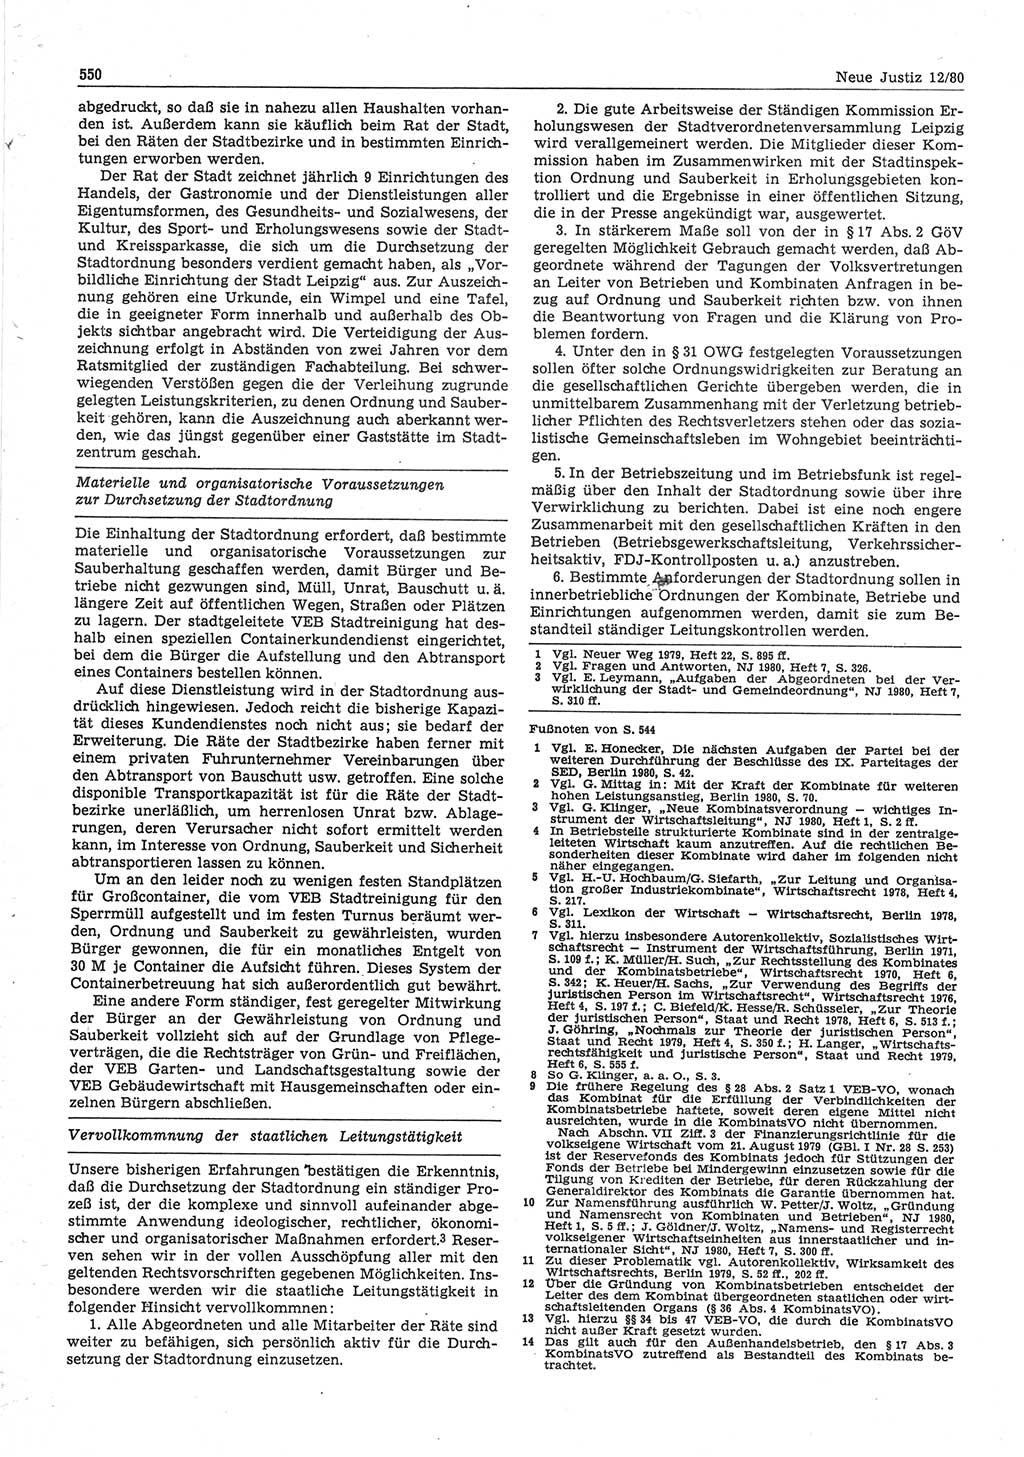 Neue Justiz (NJ), Zeitschrift für sozialistisches Recht und Gesetzlichkeit [Deutsche Demokratische Republik (DDR)], 34. Jahrgang 1980, Seite 550 (NJ DDR 1980, S. 550)